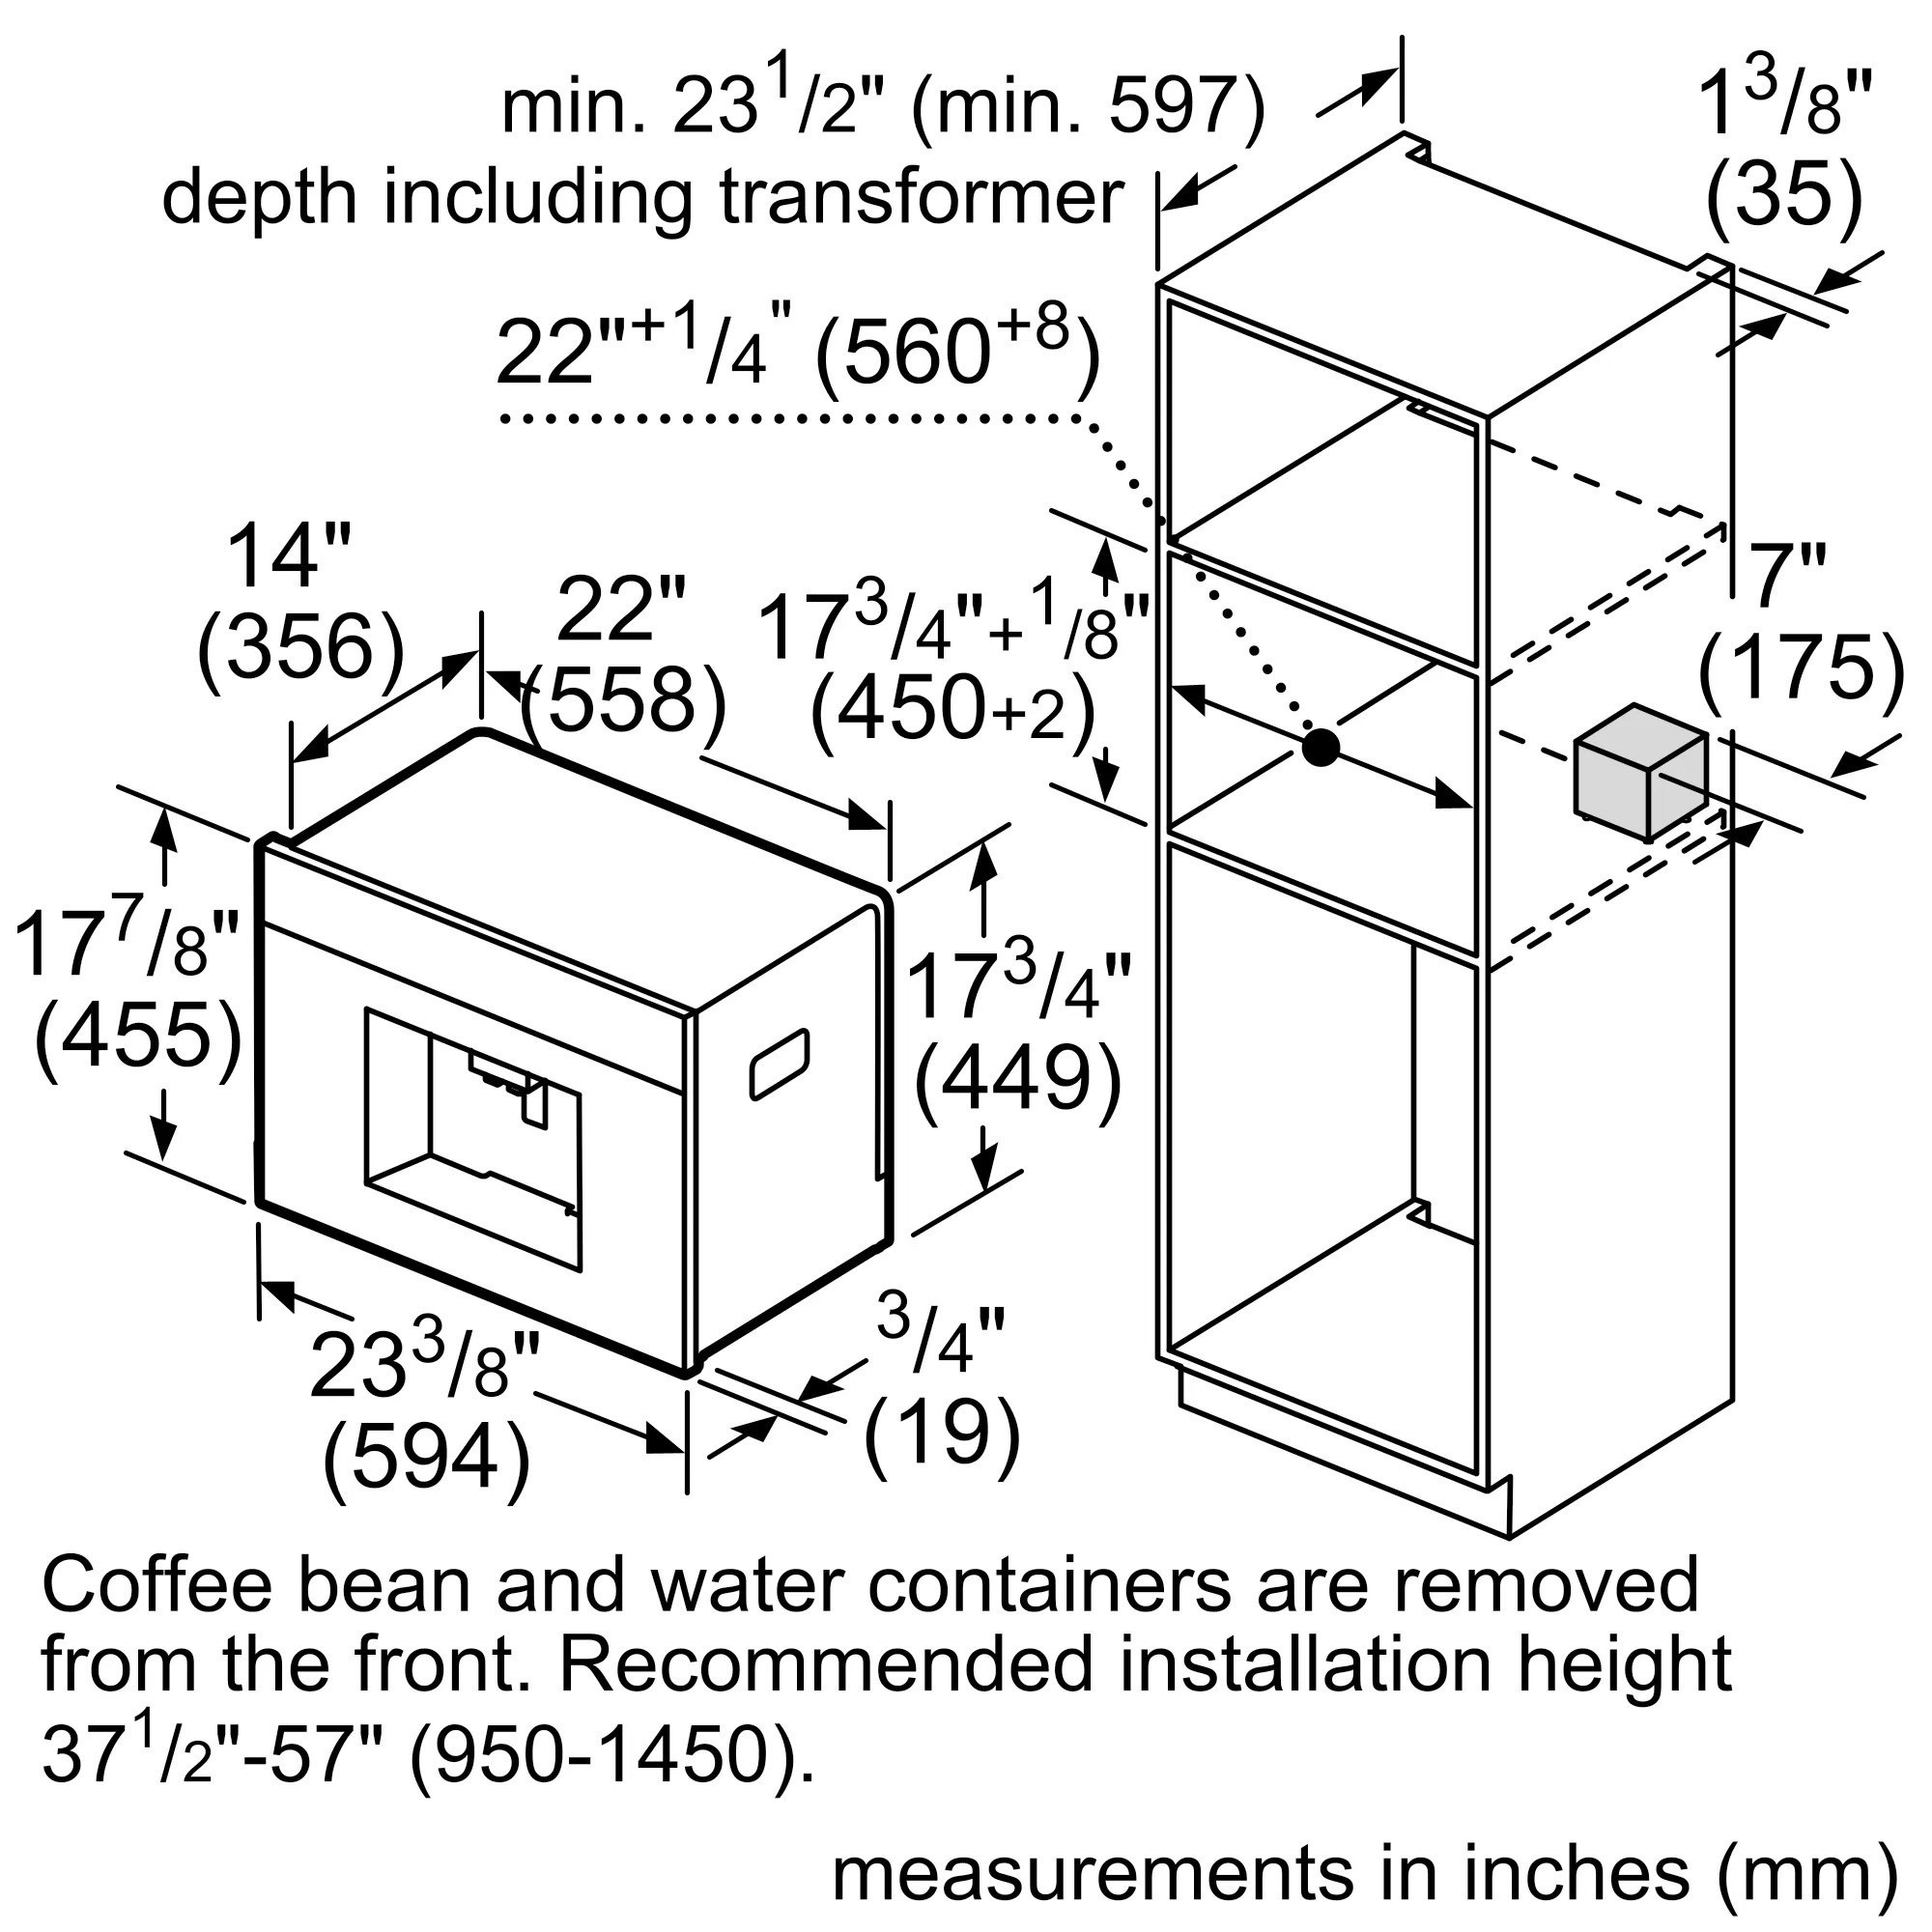 Встраиваемые кофеварки Bosch BCM 8450UC